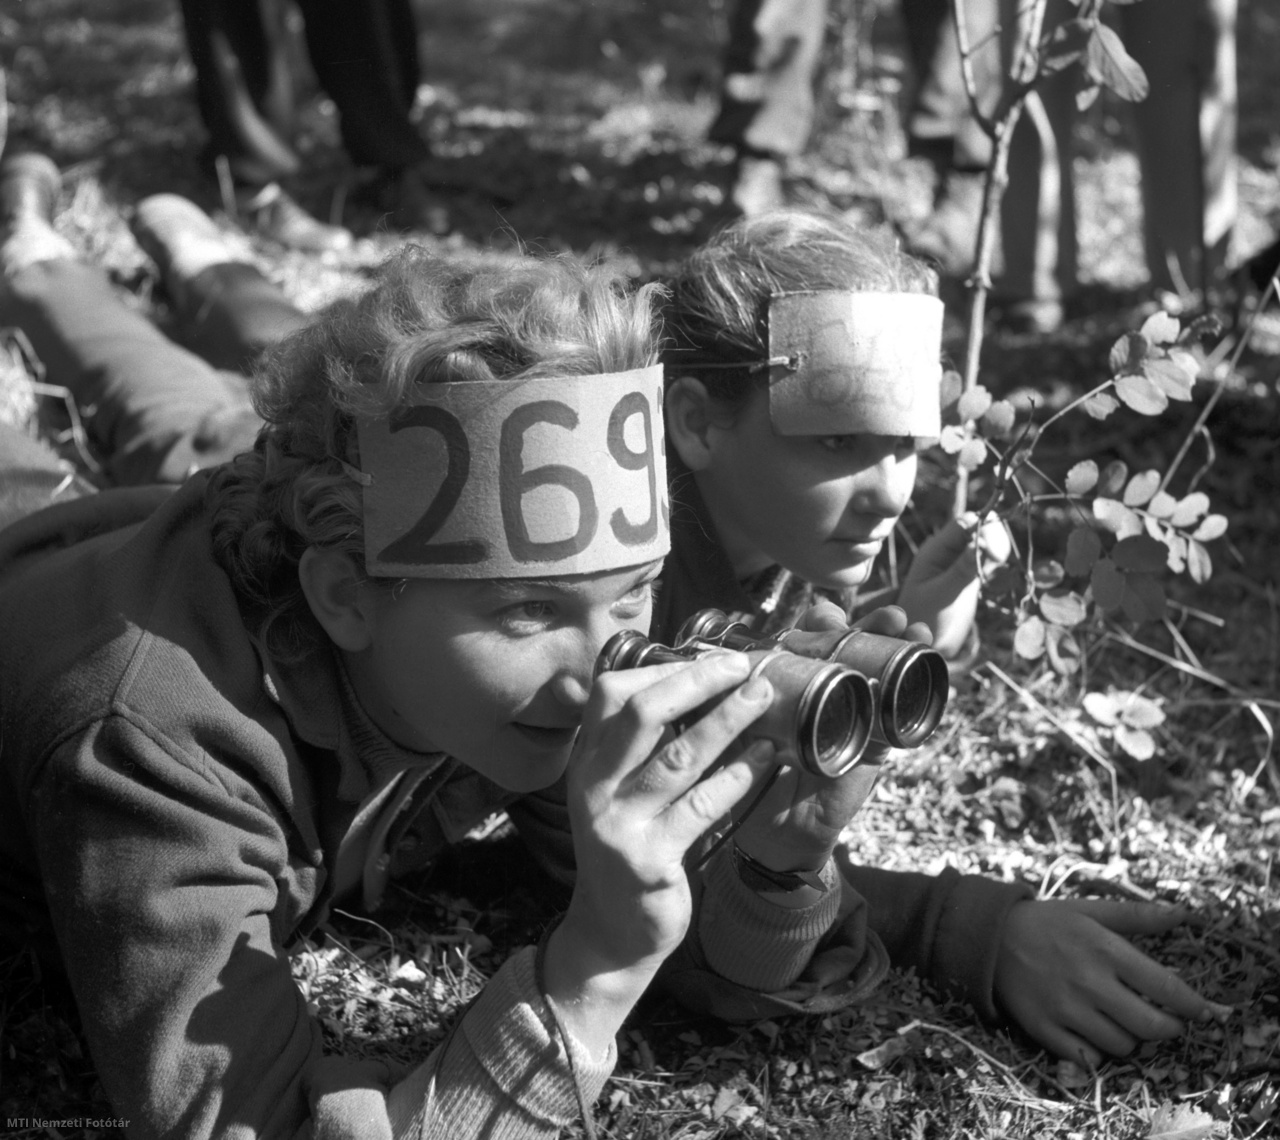 Sárbogárd, 1957. október 6. Sélley Erzsébet, a sárbogárdi általános iskola tanárnője távcső segítségével próbálja leolvasni az ellenfelek számait a sárbogárdi járási úttörők nagy őszi számháborúján a vajtai erdőben.